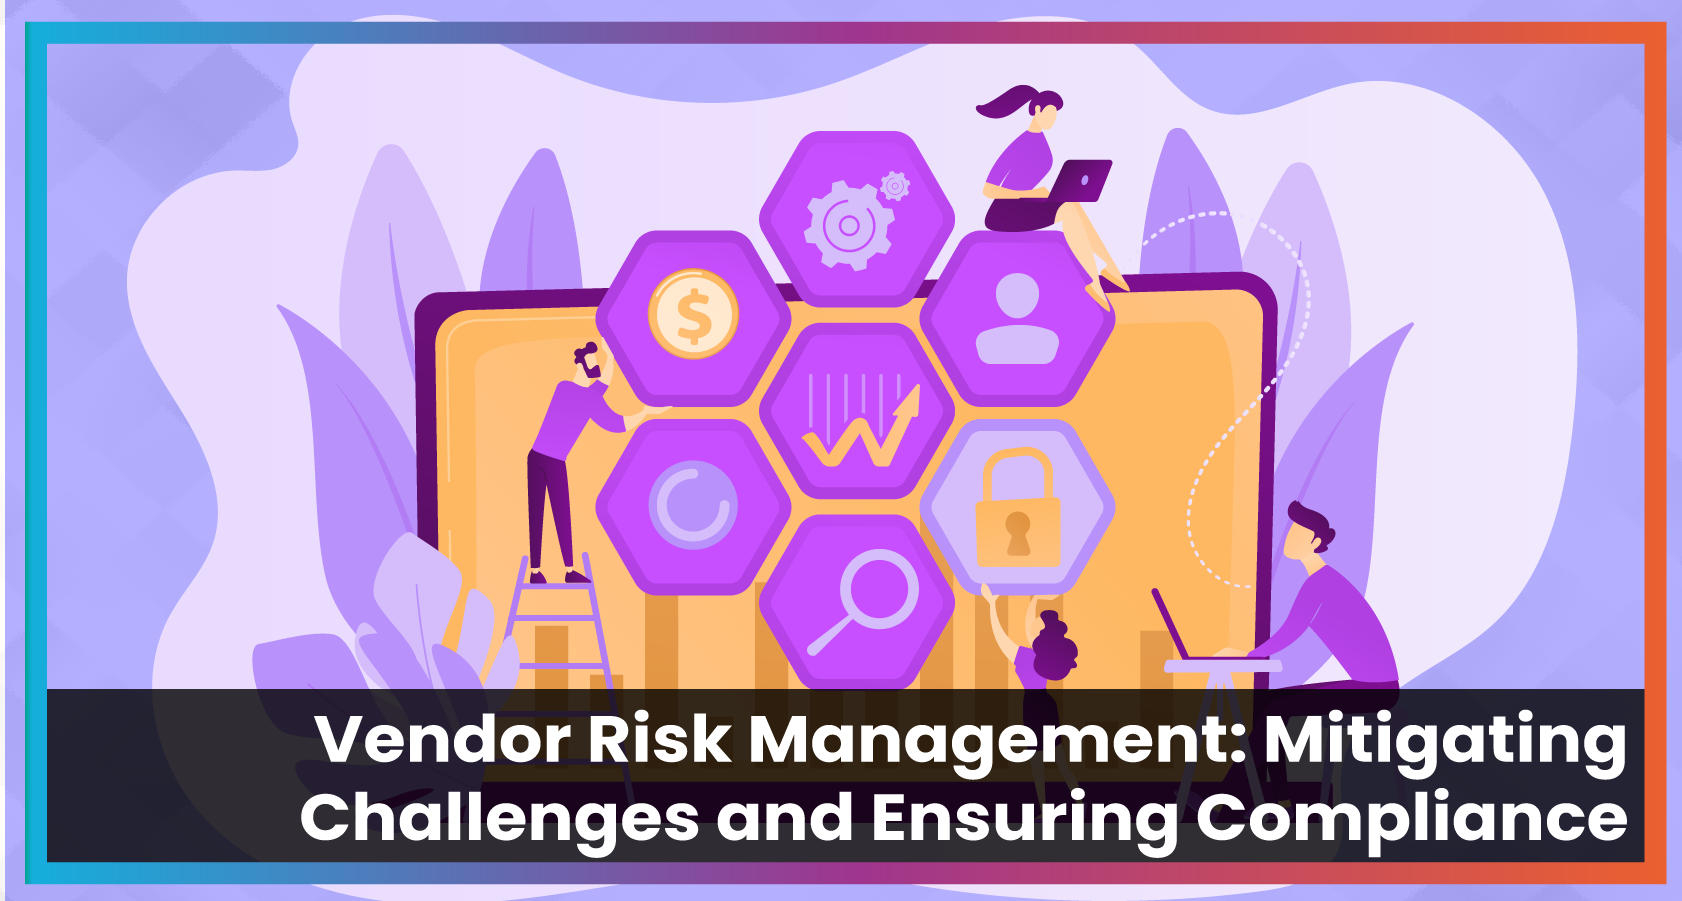 Vendor Risk Management: Mitigating Challenges and Ensuring Compliance